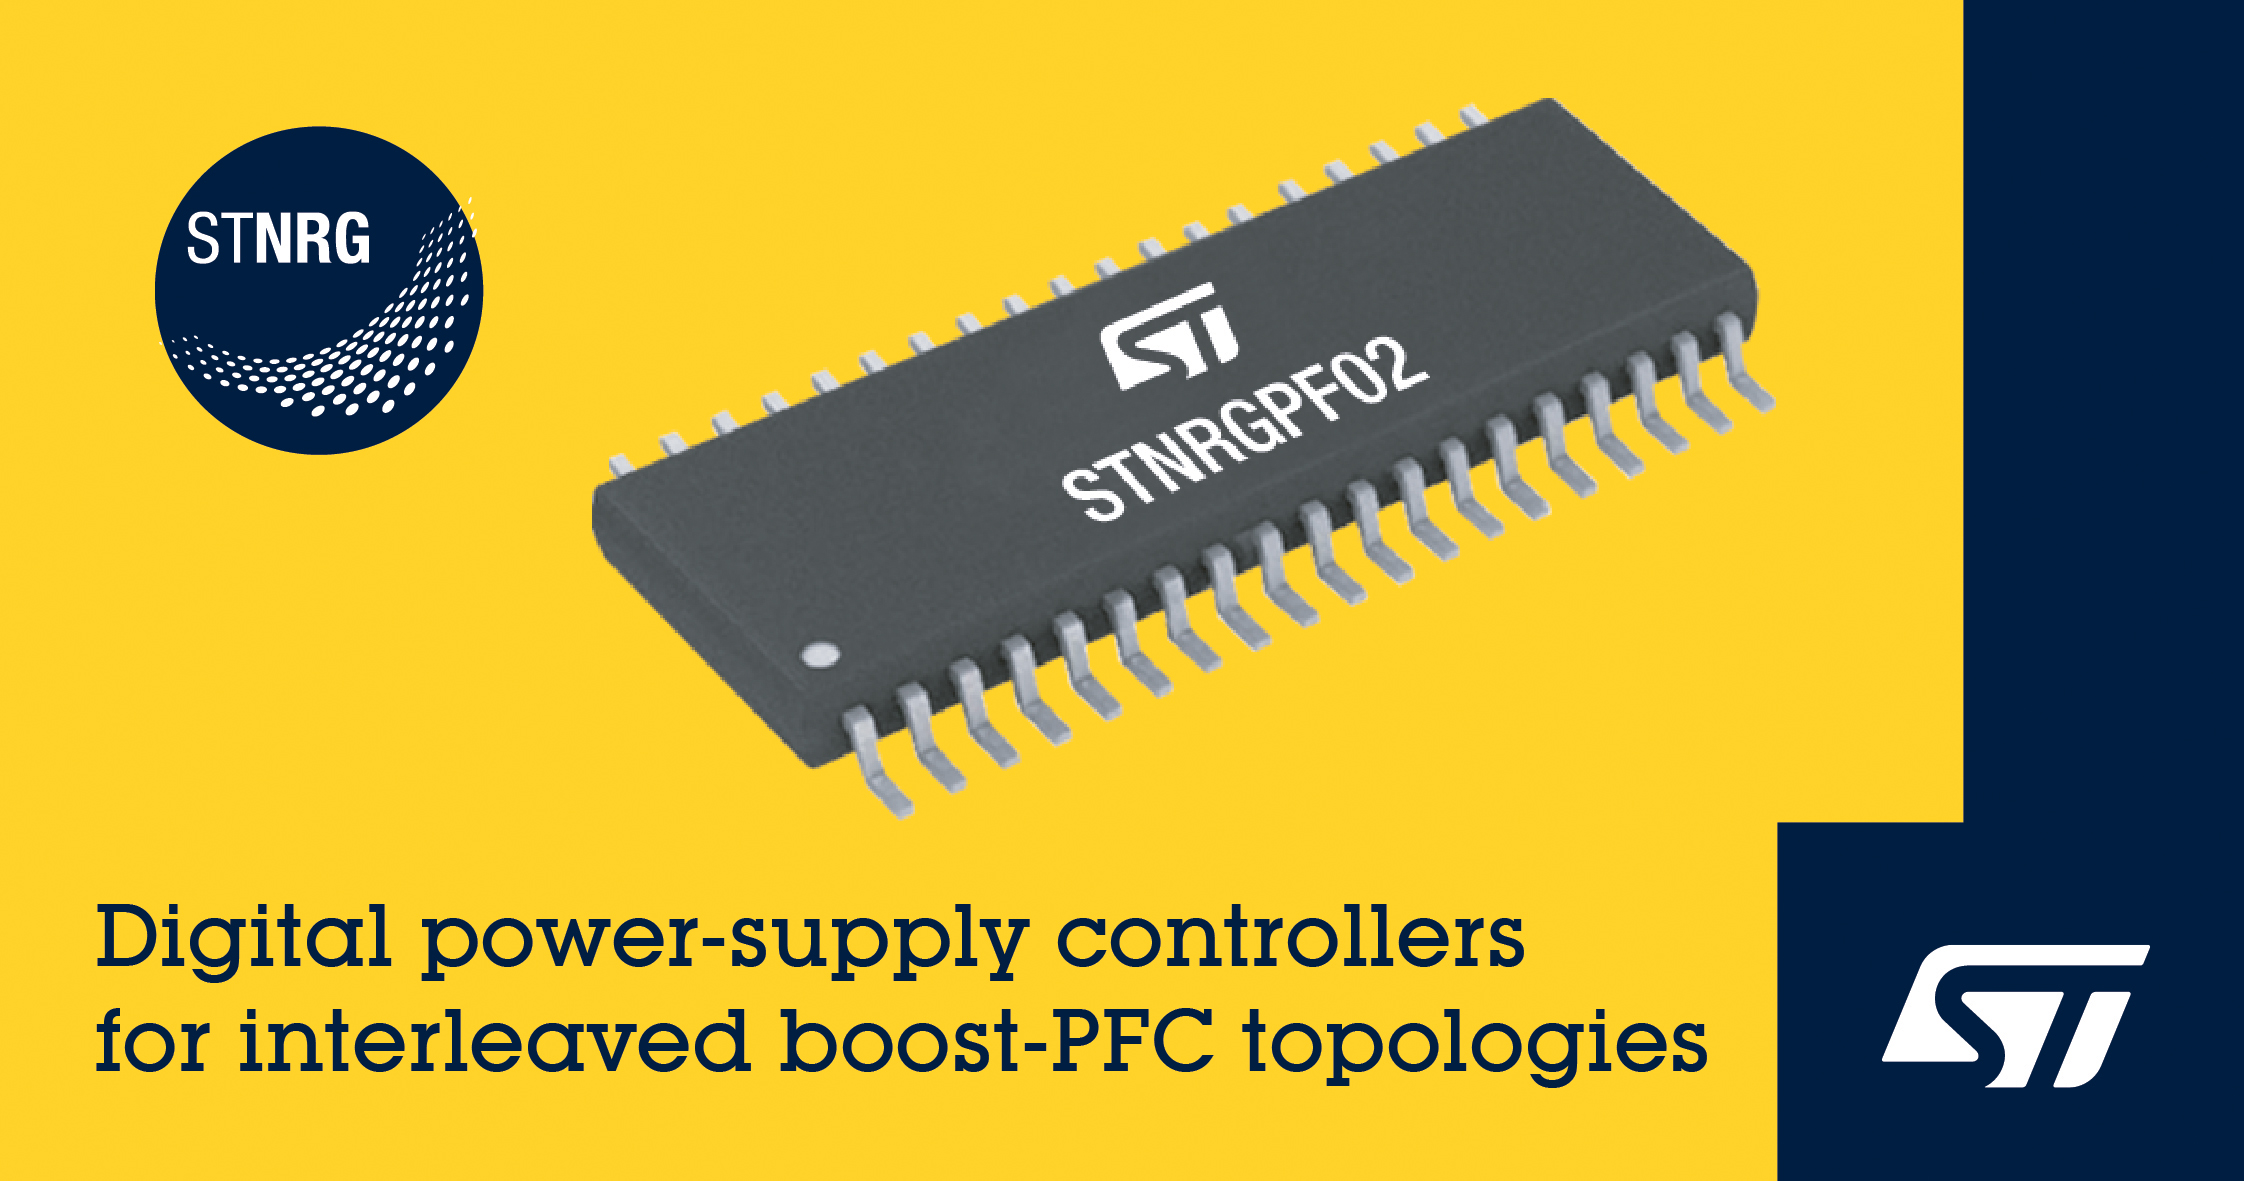 STマイクロエレクトロニクス、600W～6kWのアプリケーションに対応するデジタルPFCコントローラを発表